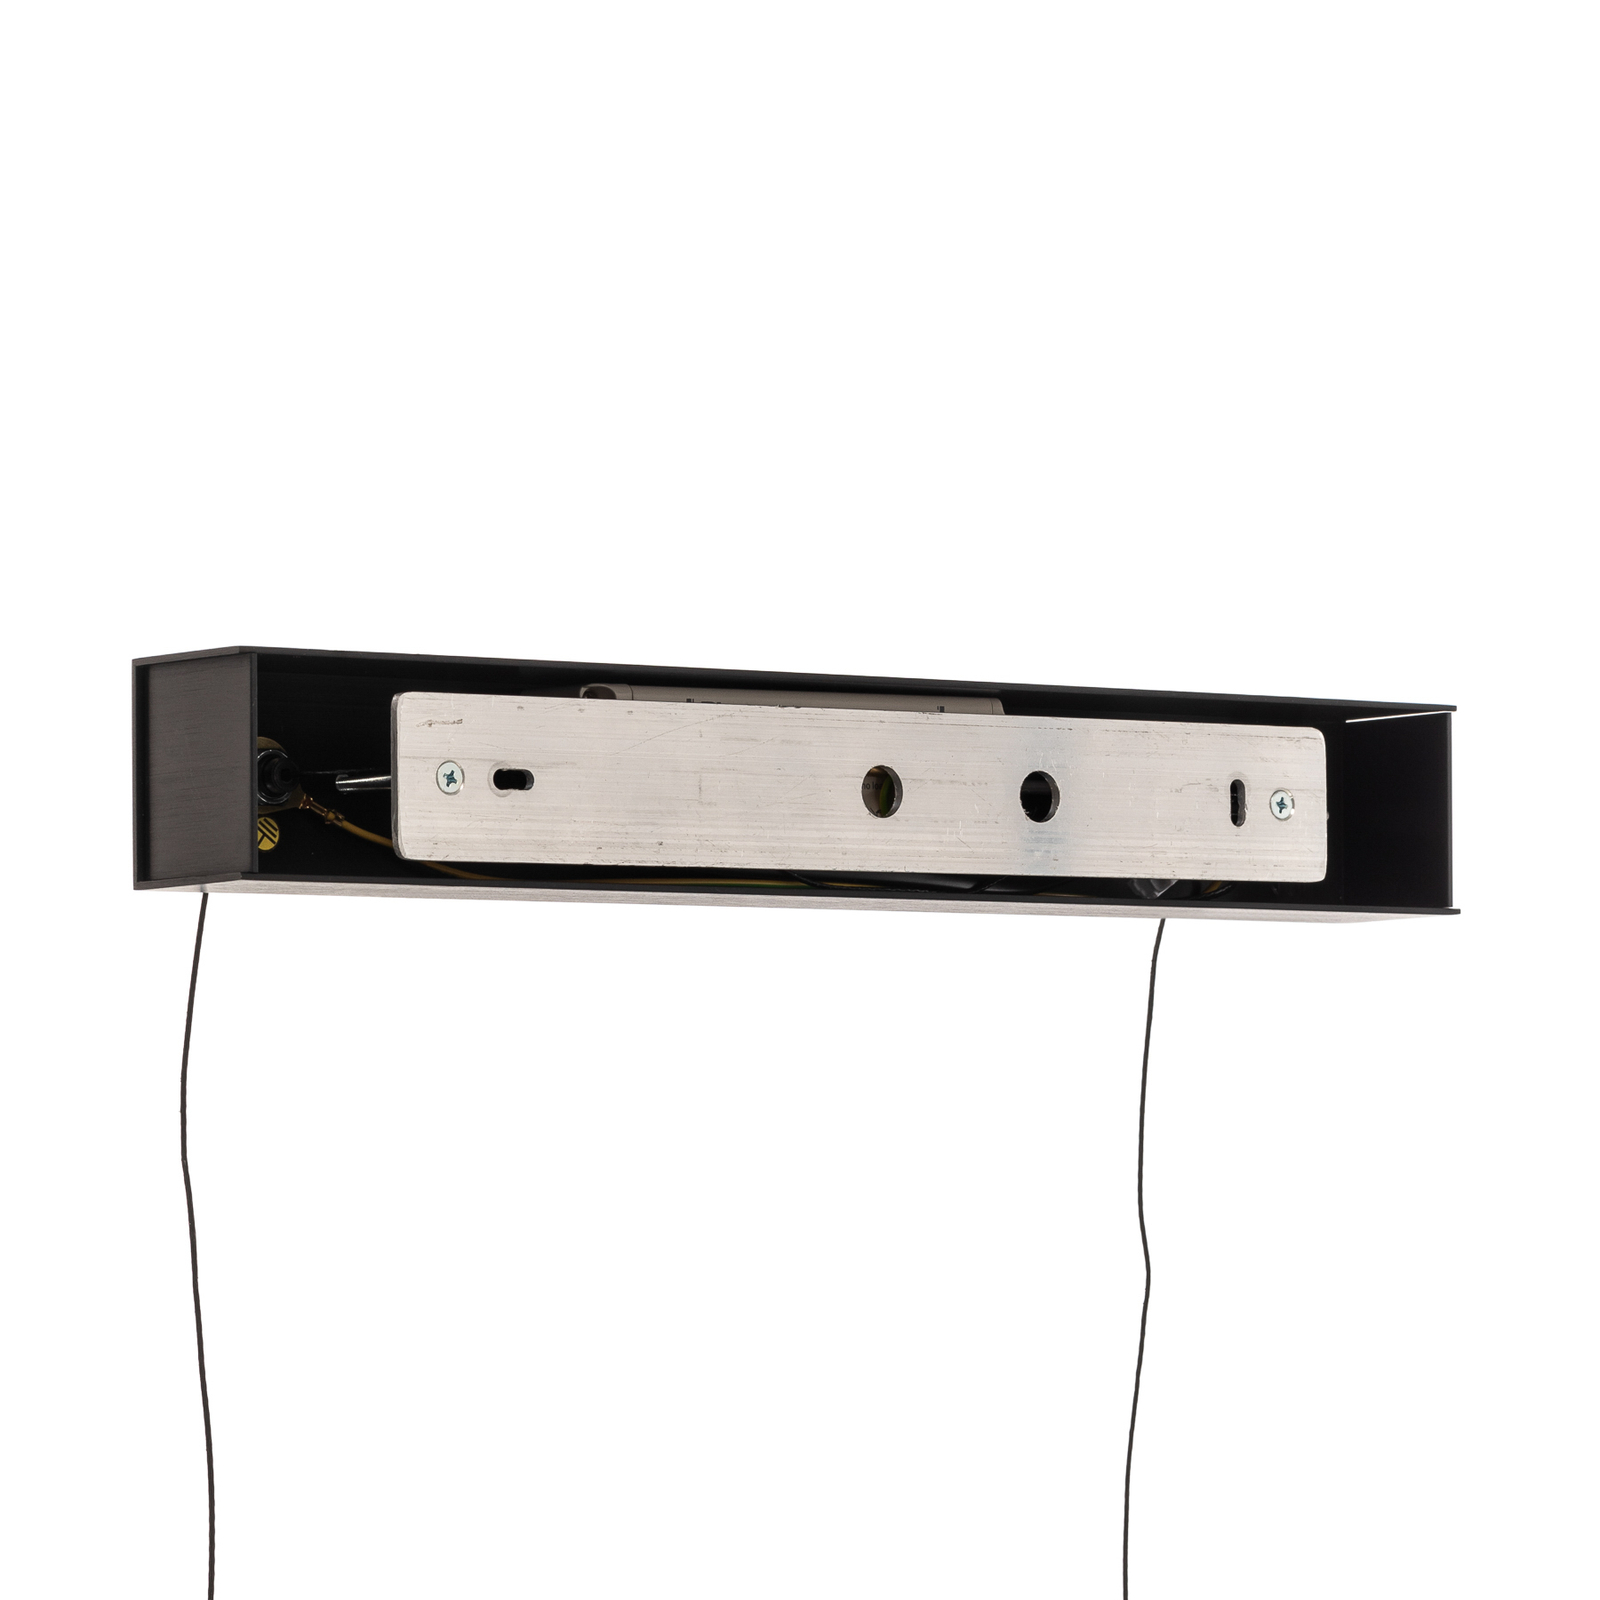 Candeeiro de suspensão Quitani Elis LED carvalho/preto 118 cm